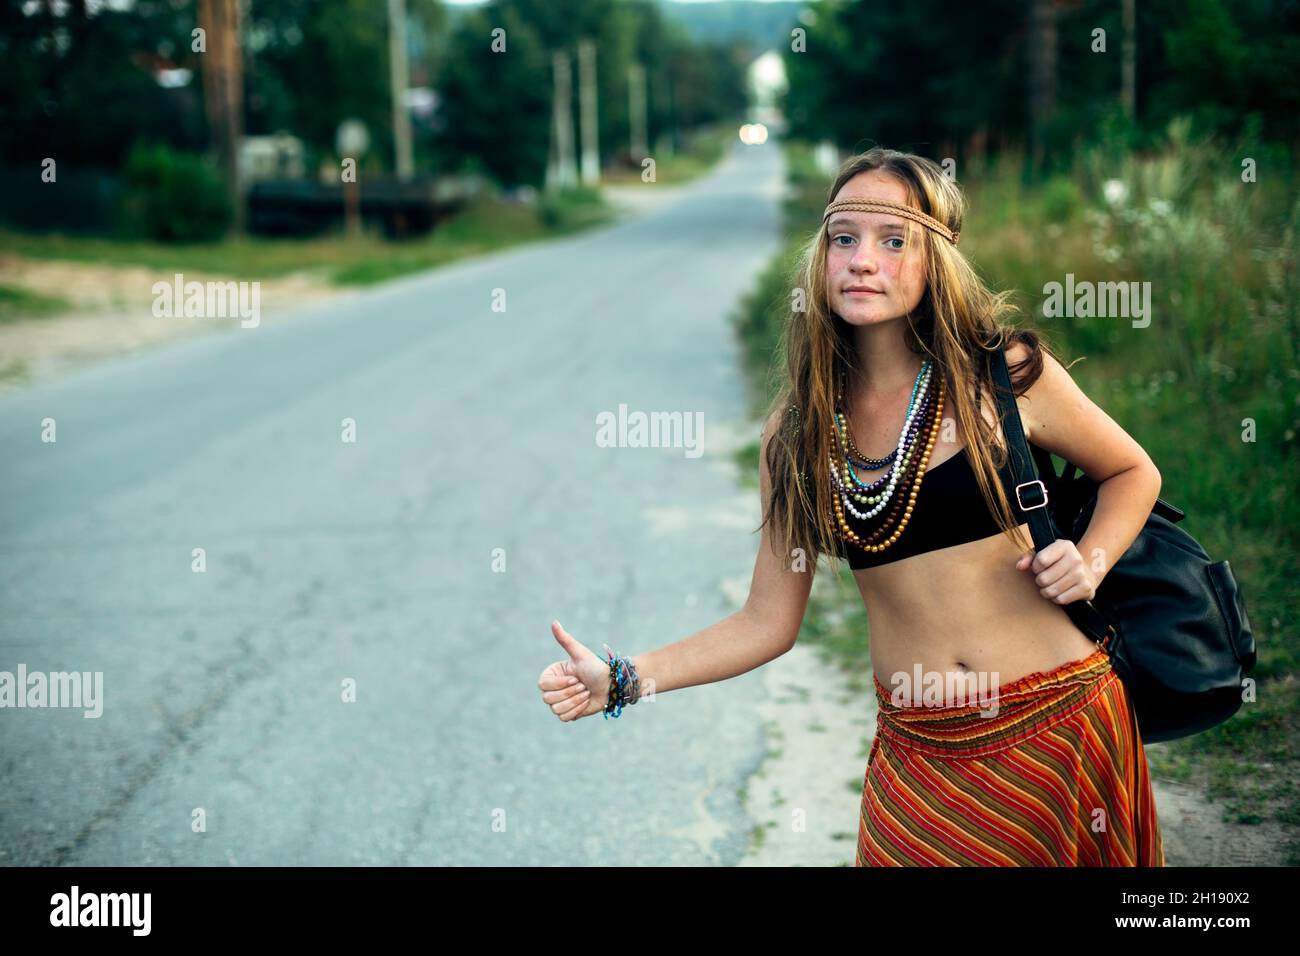 Hippie-Mädchen, das in der Nähe der Landstraße stimmt. Anhalter. Stockfoto